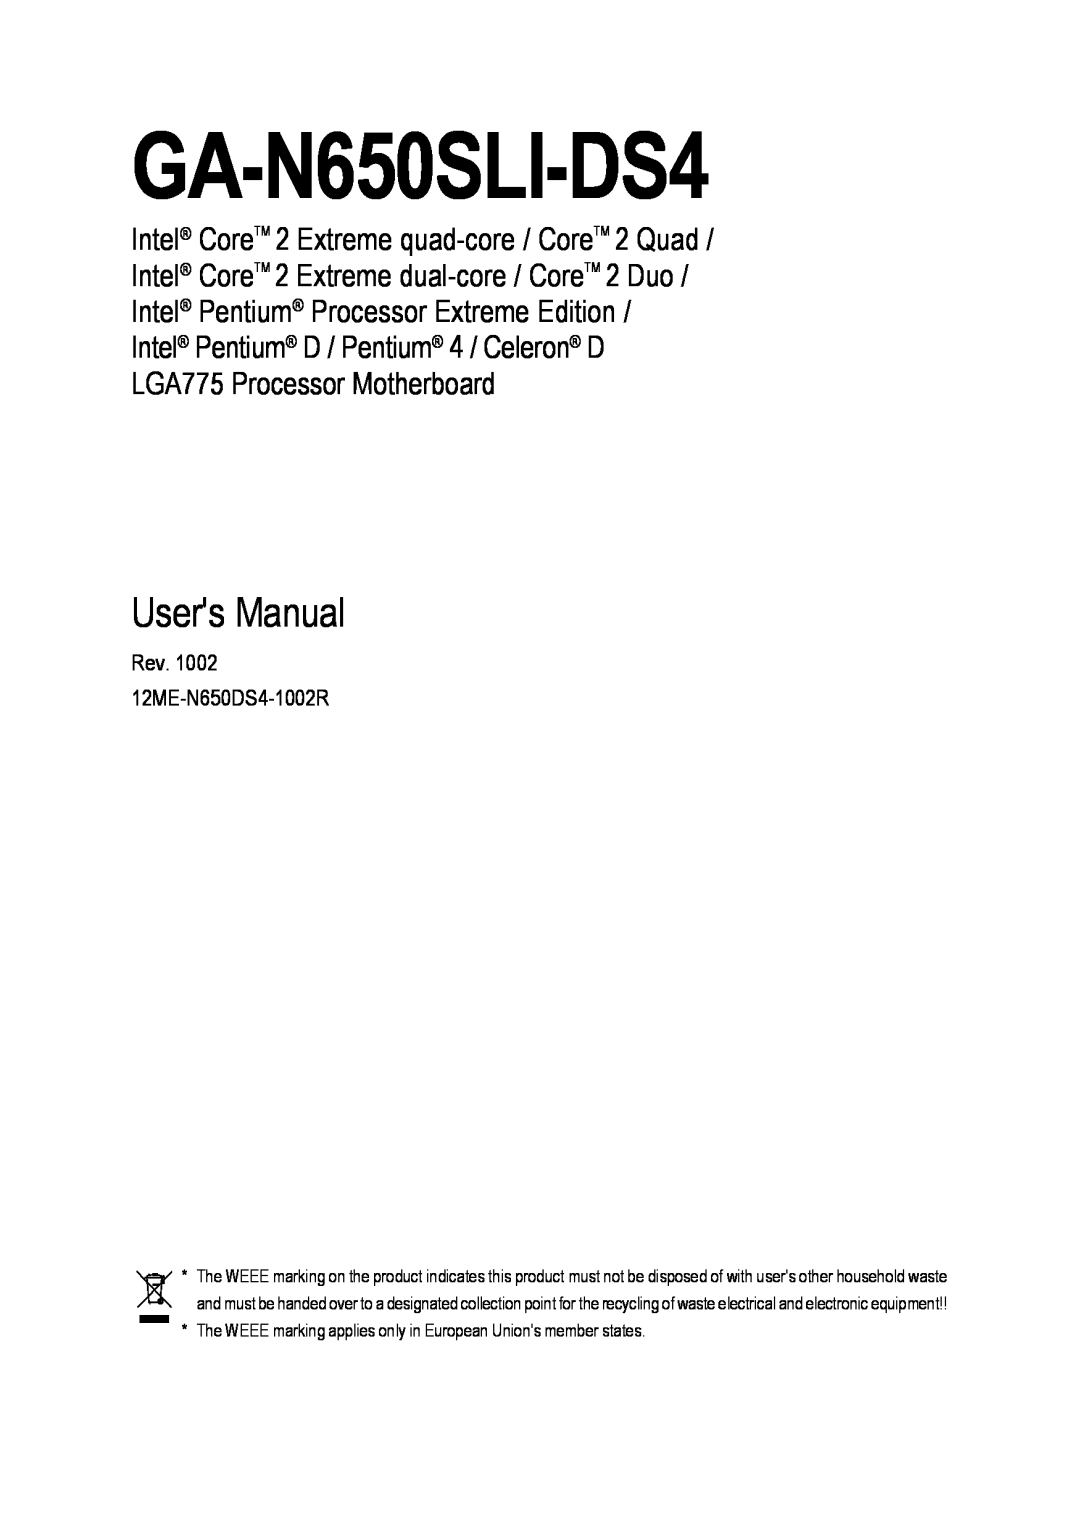 Intel GA-N650SLI-DS4 user manual Users Manual 